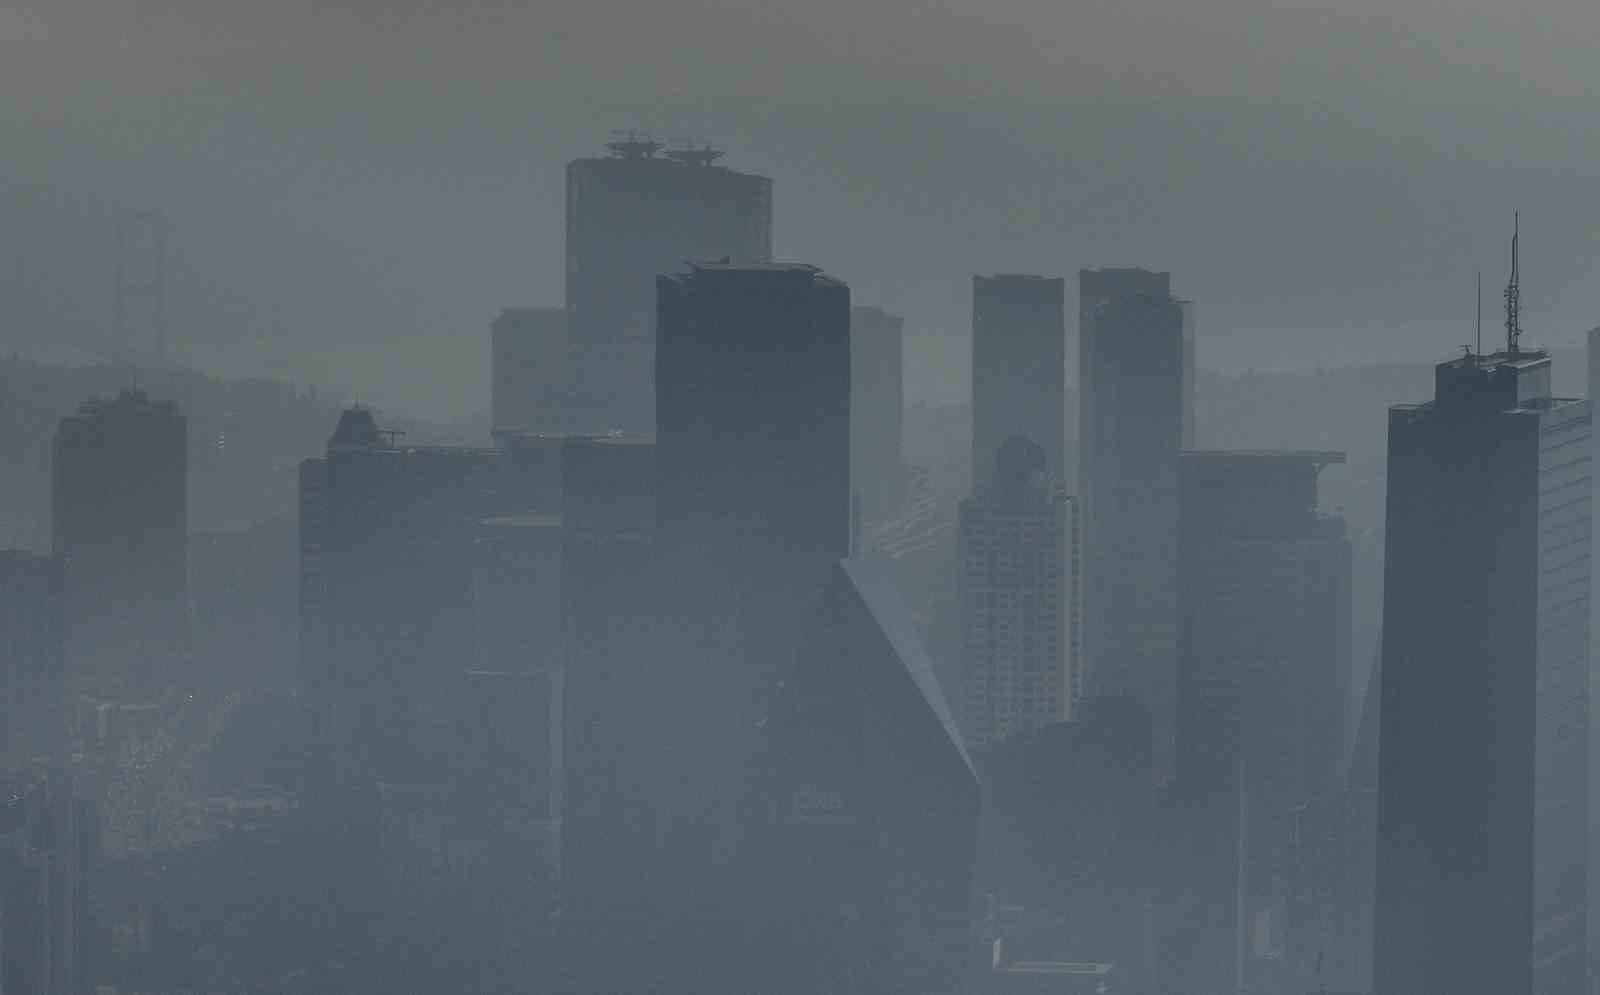 Puslu hava İstanbul’u sardı: Adeta tabloya dönüşen kent havadan görüntülendi
